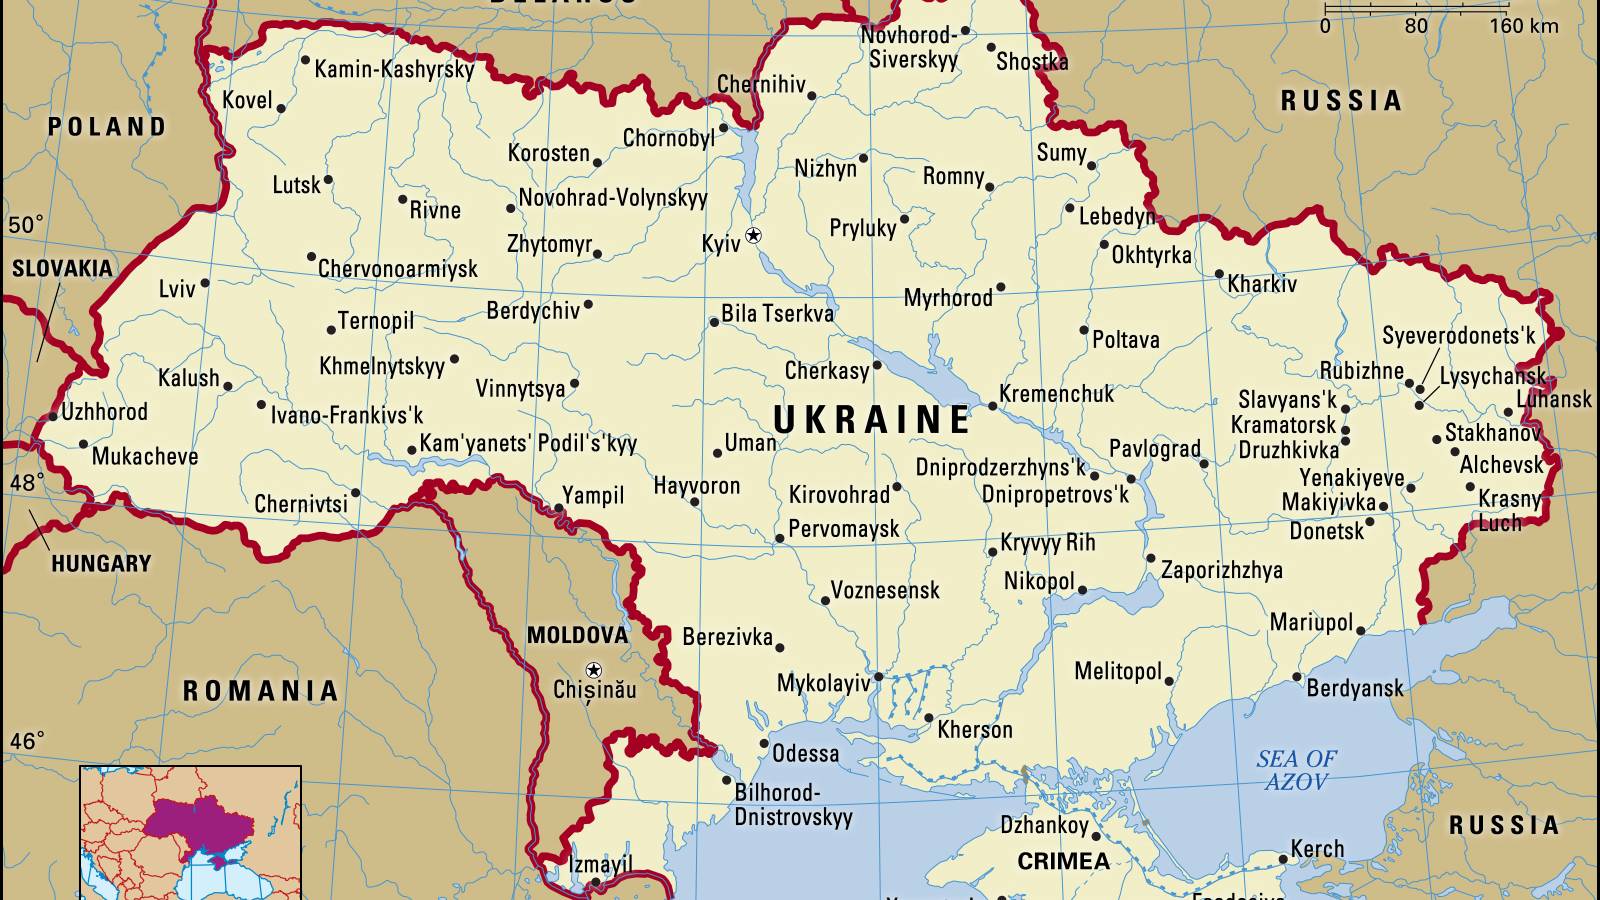 Mapa de los Territorios Ocupados por el Ejército Ruso en Ucrania hasta el 16 de marzo de 2022